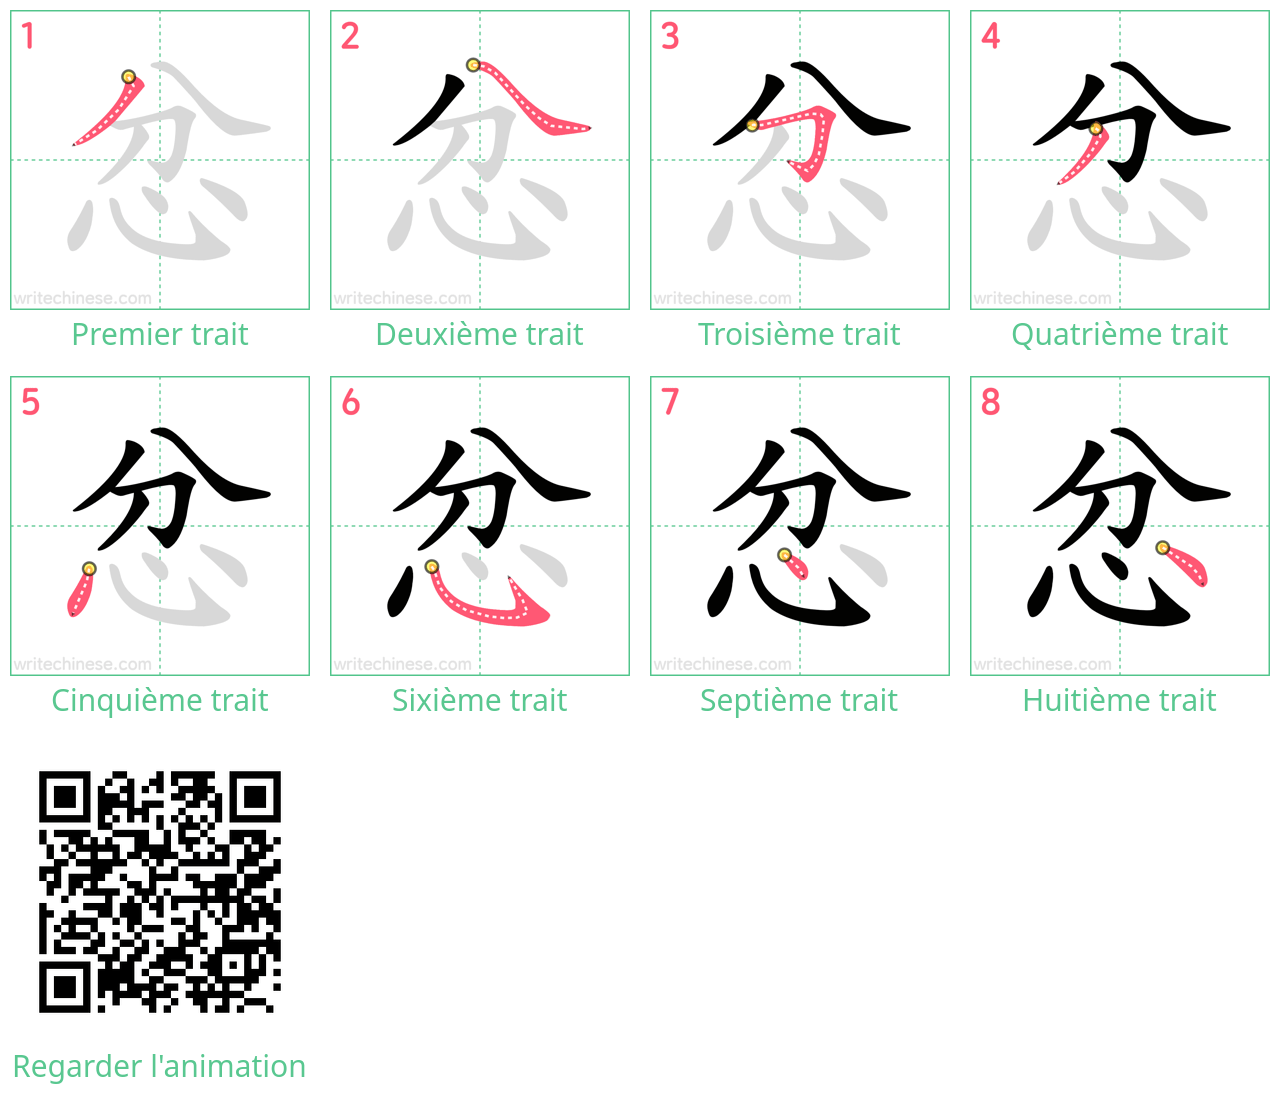 Diagrammes d'ordre des traits étape par étape pour le caractère 忿